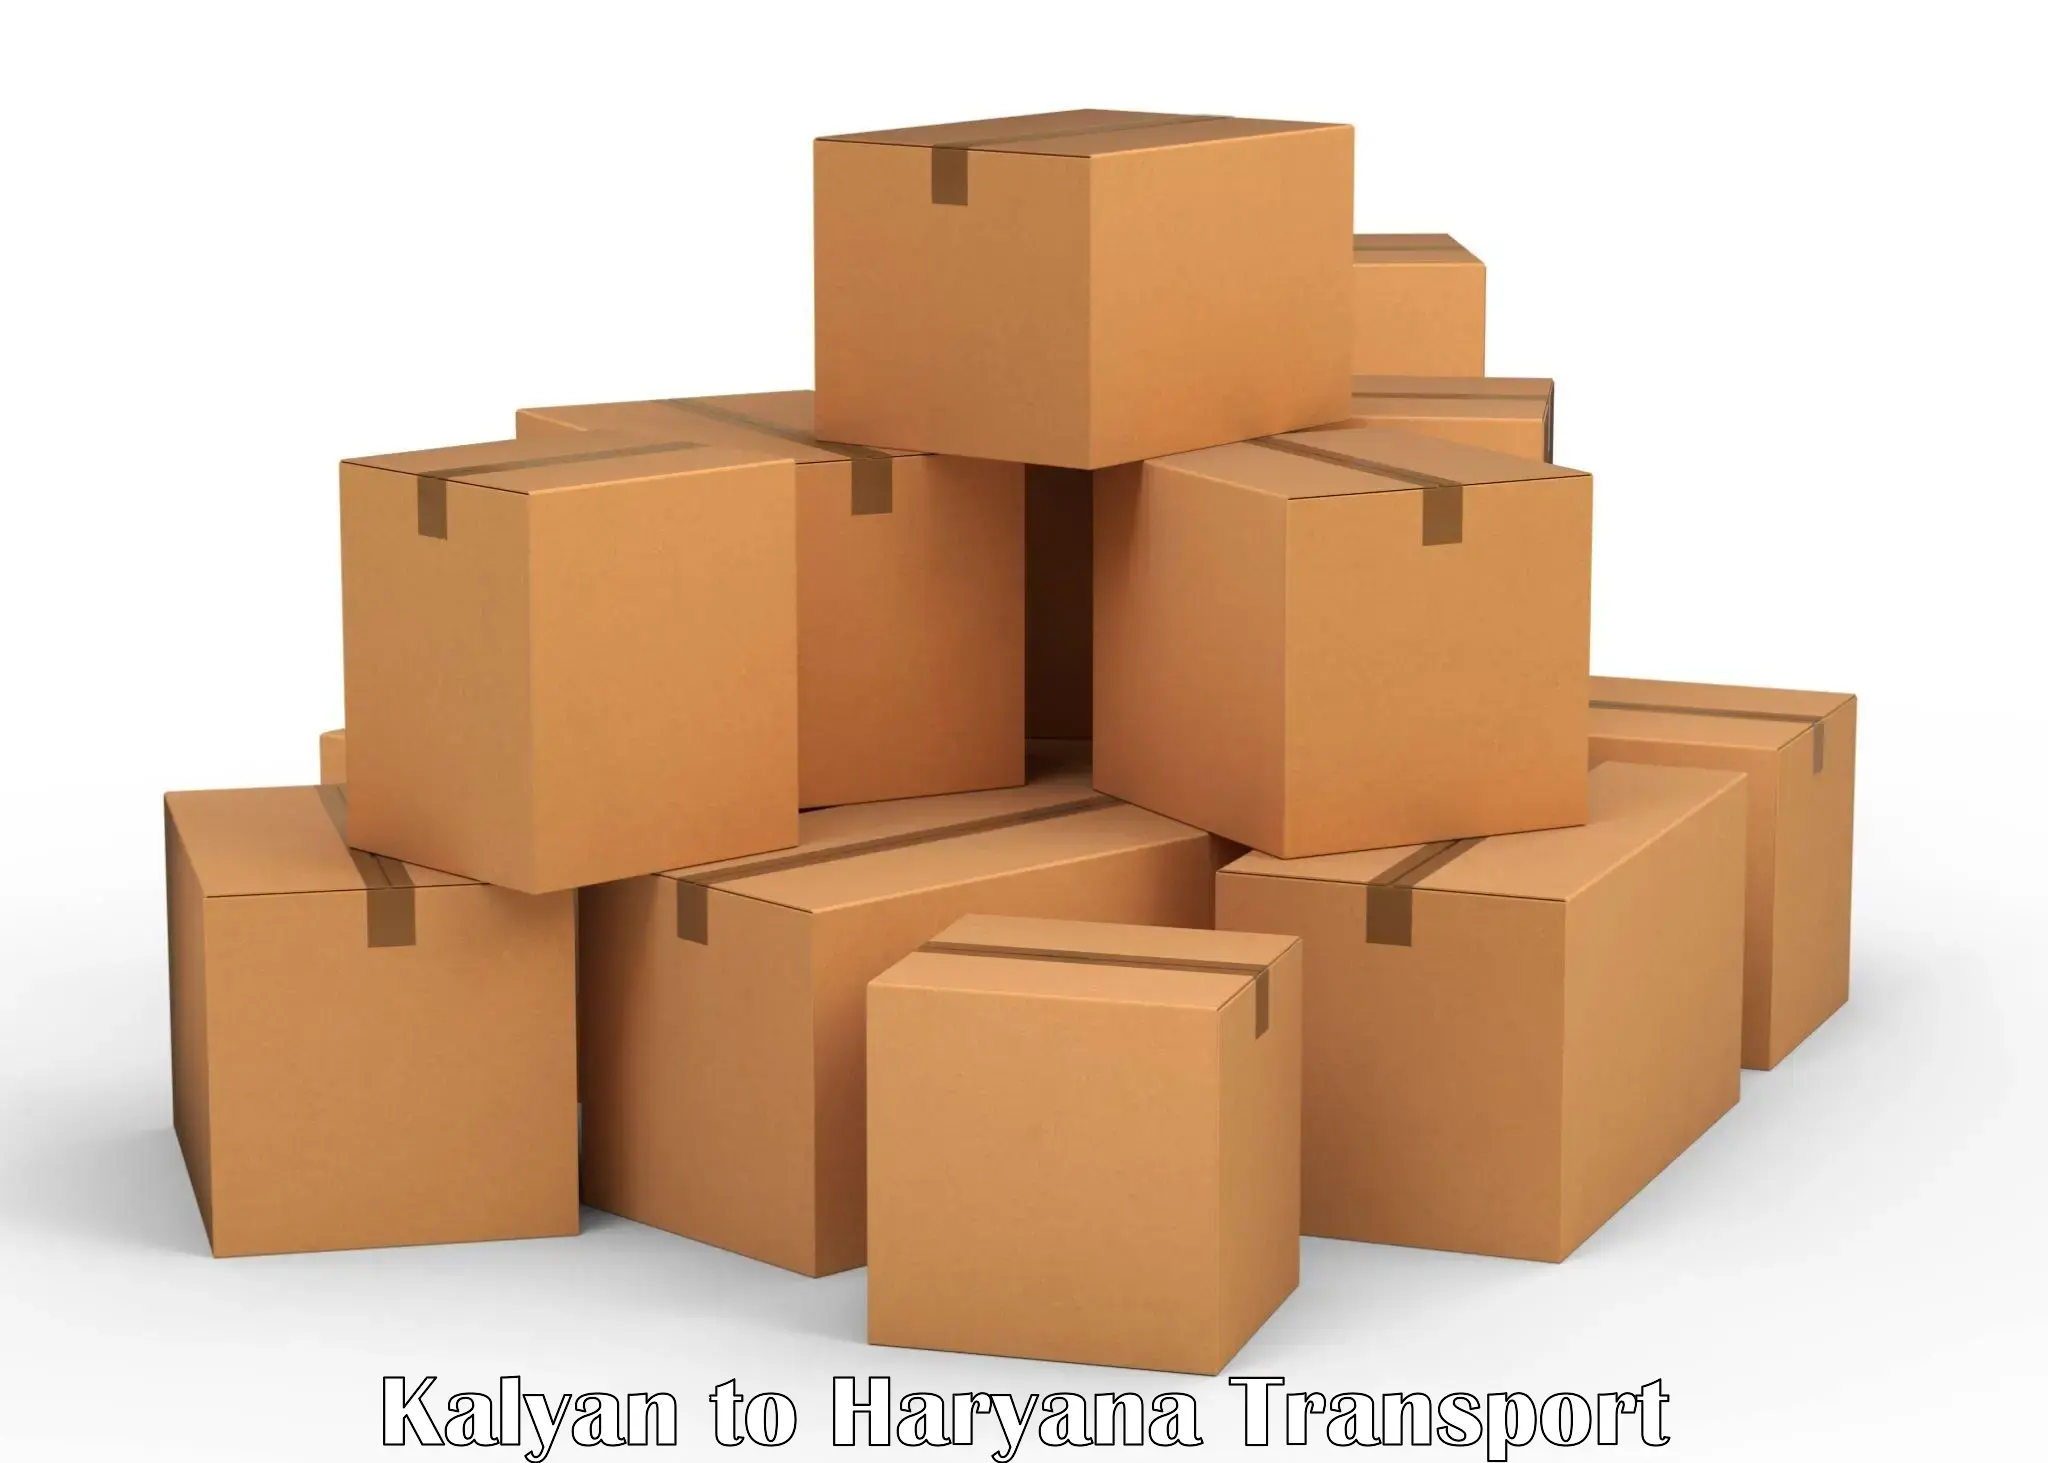 Shipping services Kalyan to Odhan